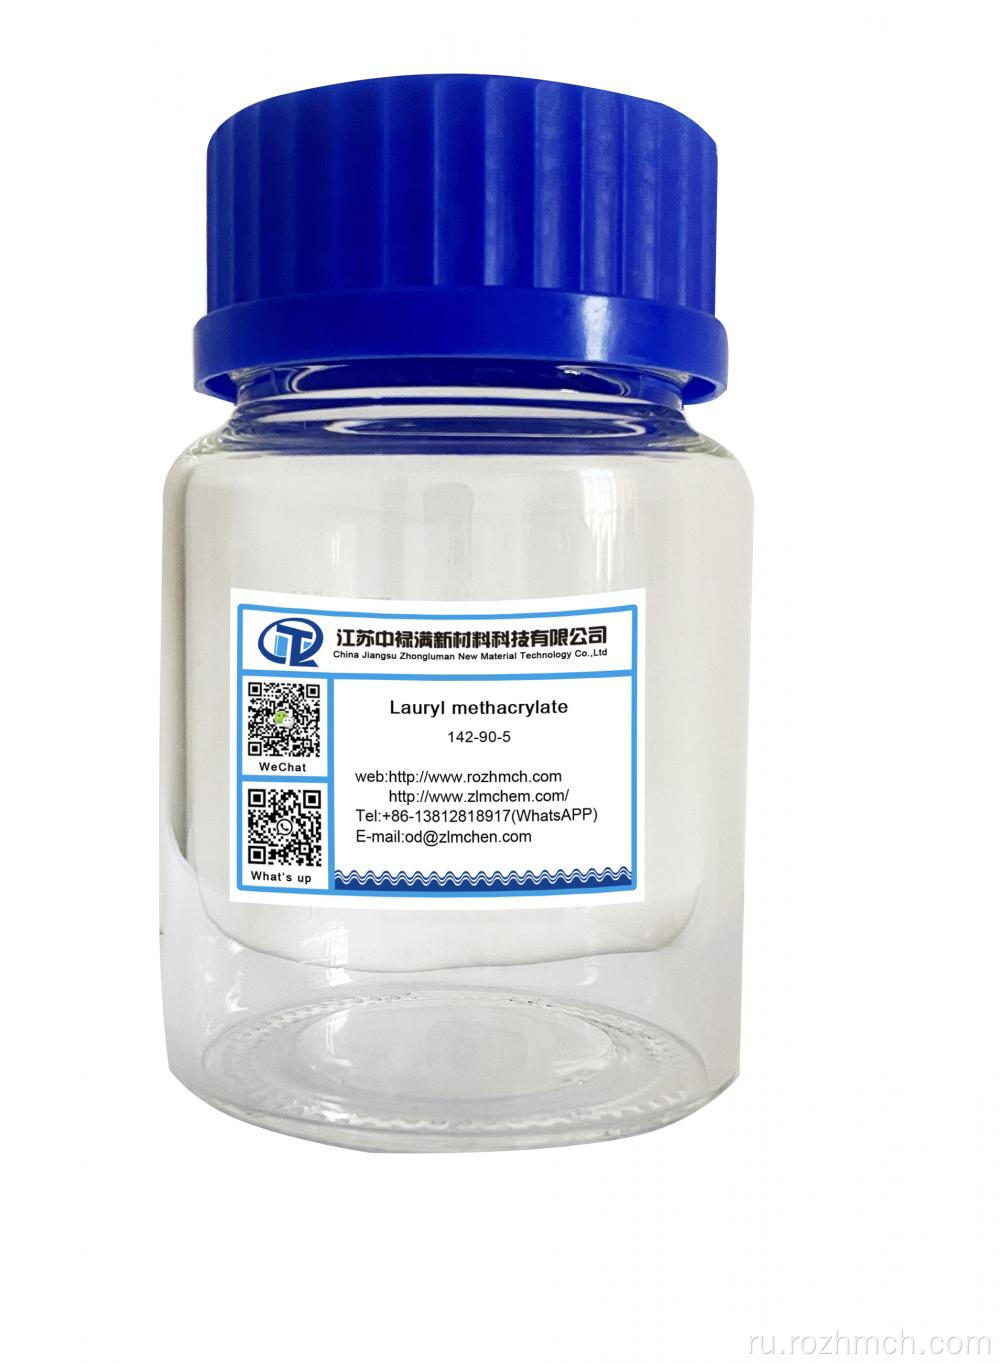 Lauryl Methacrylate CAS 142-90-5